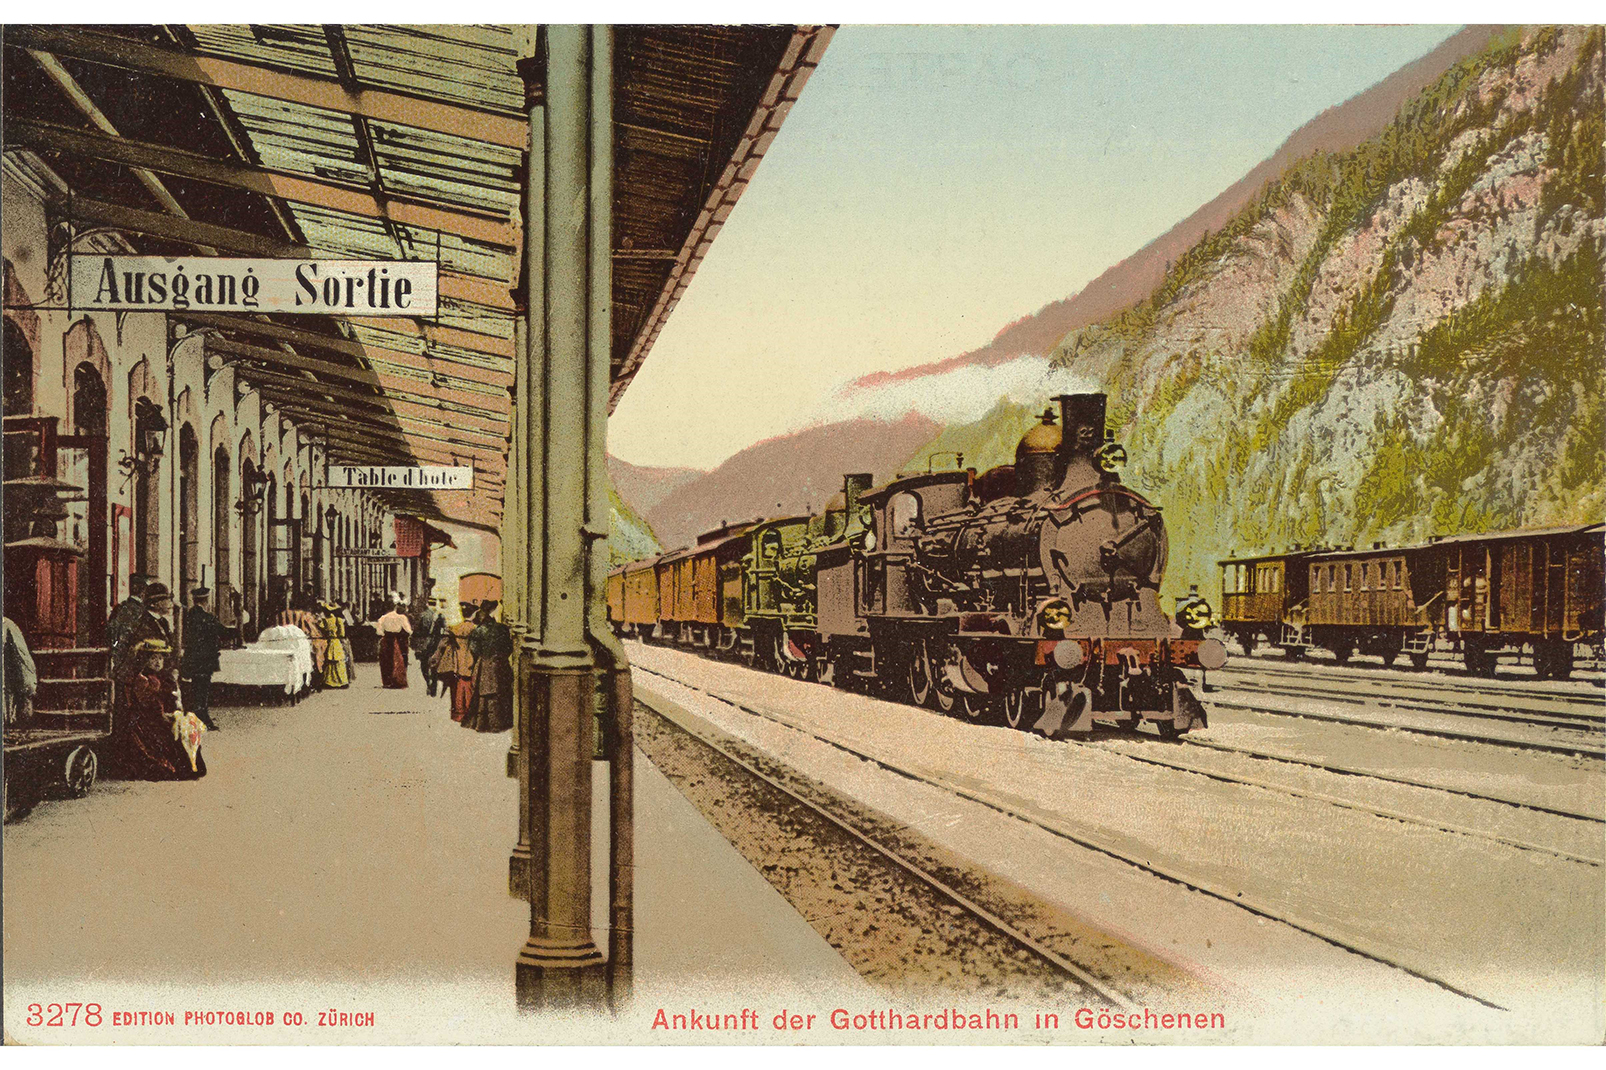 Bahnhof Göschenen, Postkarte ca. 1905, ©SBB Historic